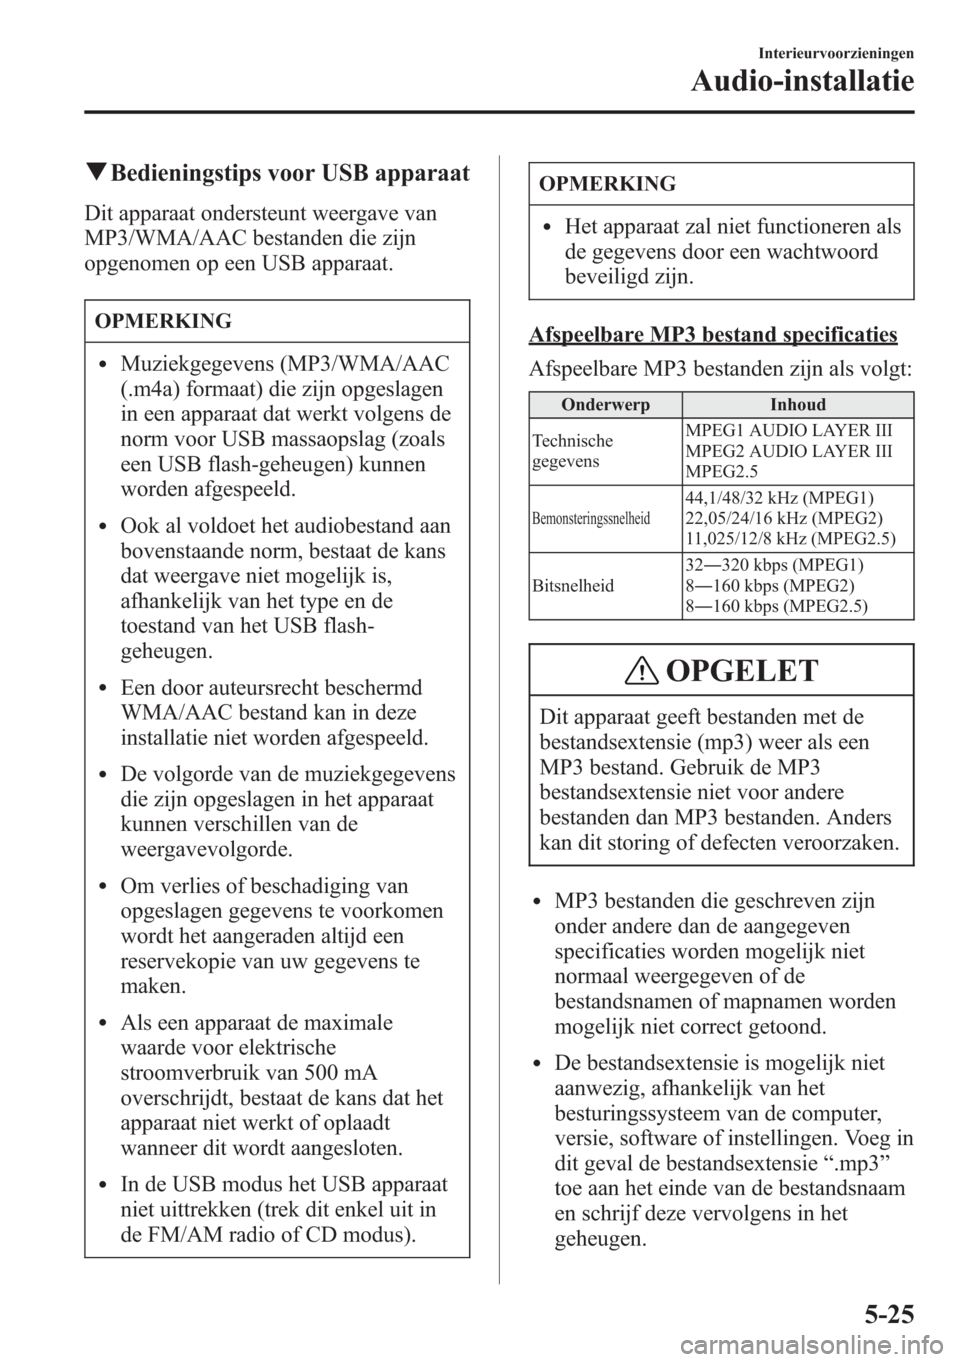 MAZDA MODEL CX-5 2013  Handleiding (in Dutch) qBedieningstips voor USB apparaat
Dit apparaat ondersteunt weergave van
MP3/WMA/AAC bestanden die zijn
opgenomen op een USB apparaat.
OPMERKING
lMuziekgegevens (MP3/WMA/AAC
(.m4a) formaat) die zijn op